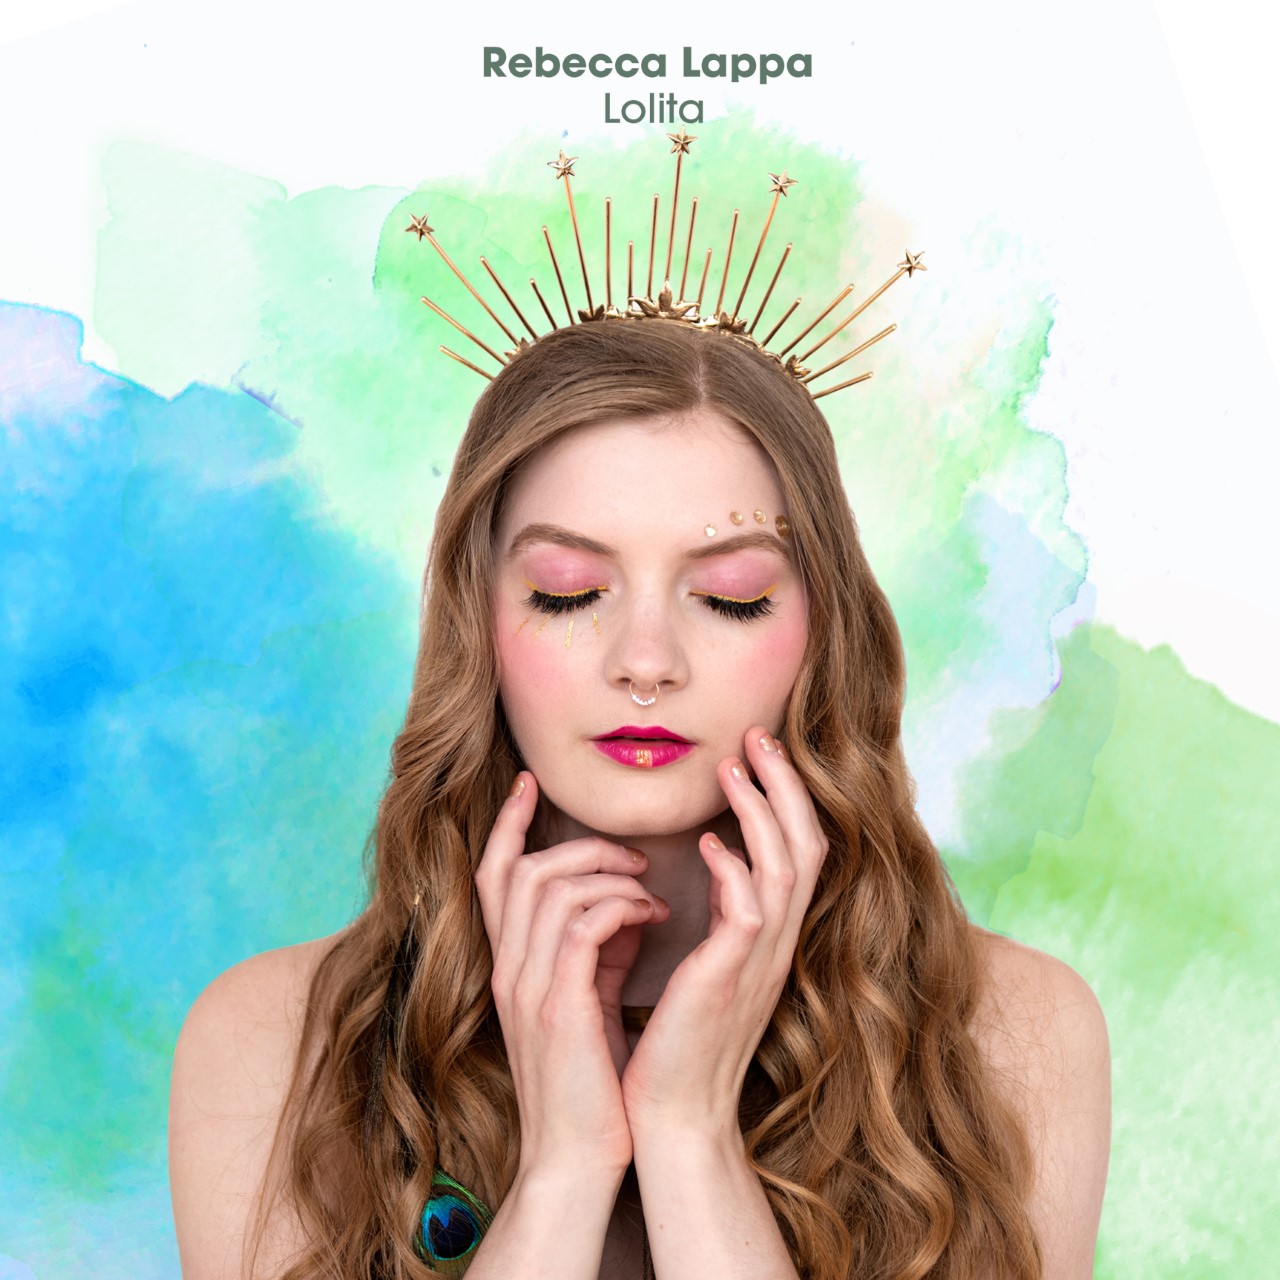 LISTEN: “Lolita” by Rebecca Lappa